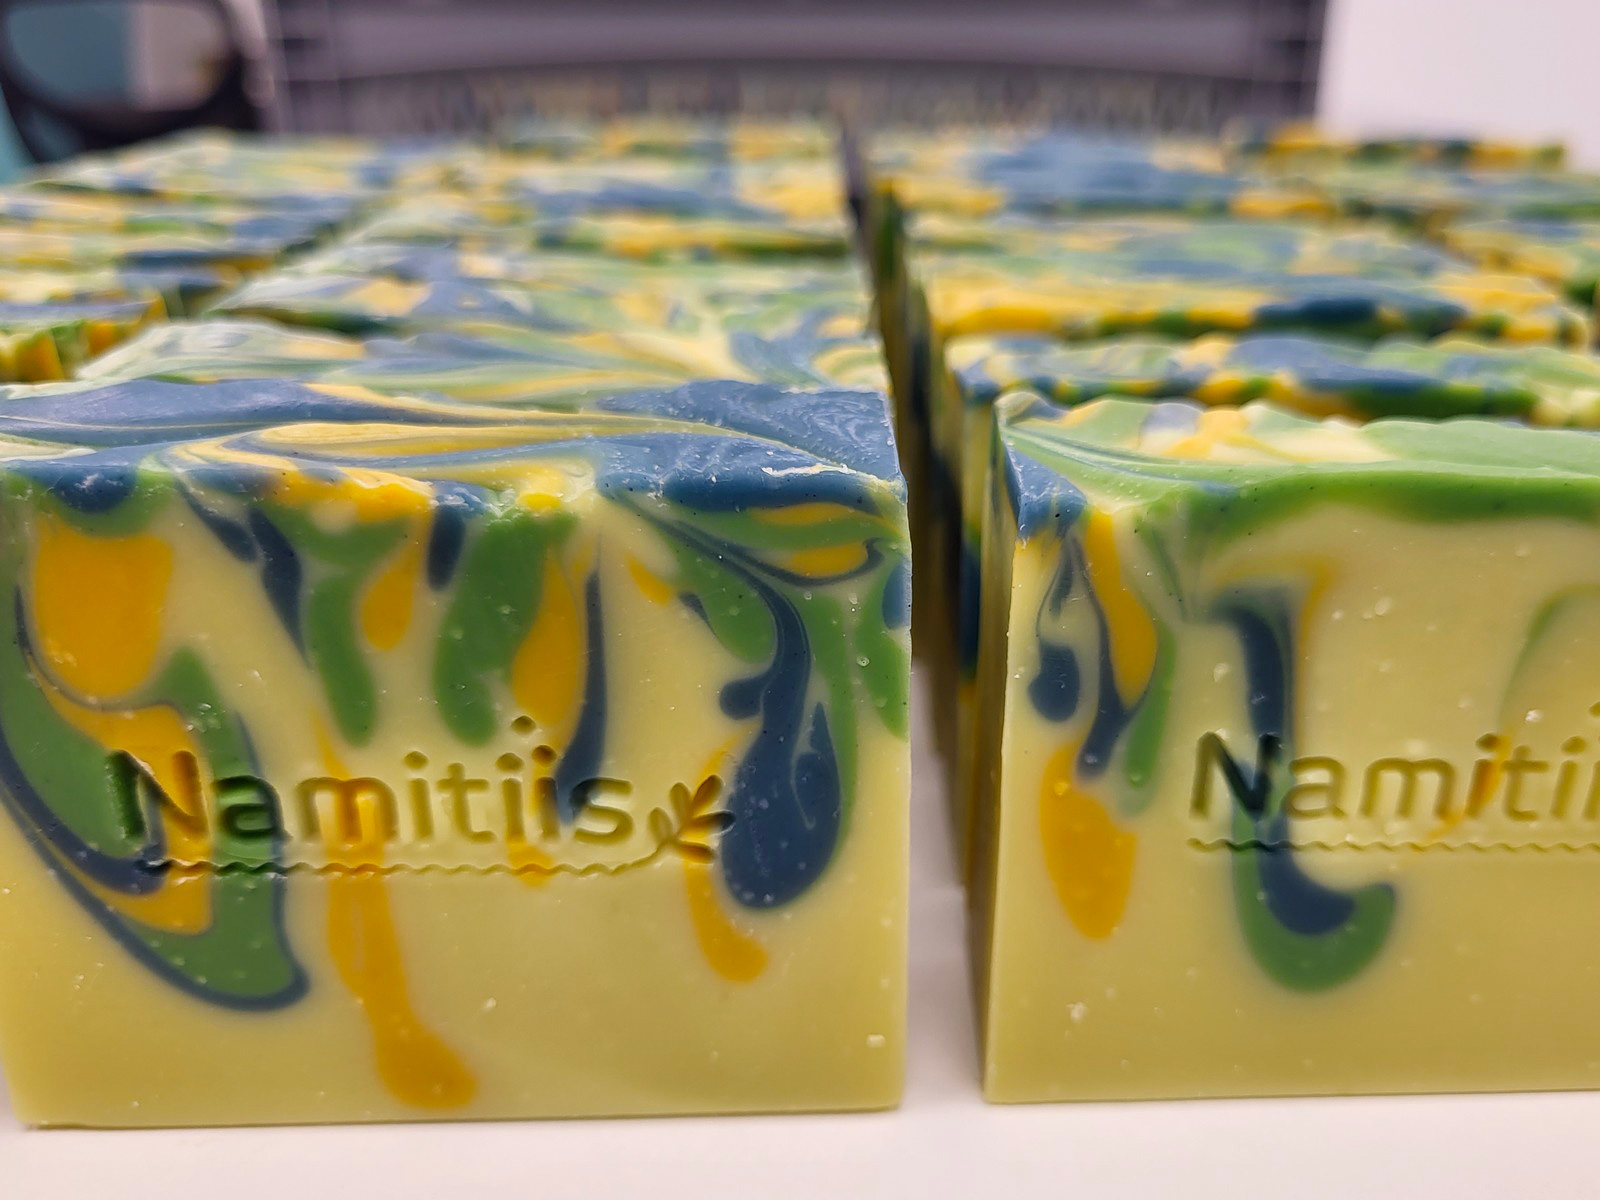 Namitiis Soap Factory